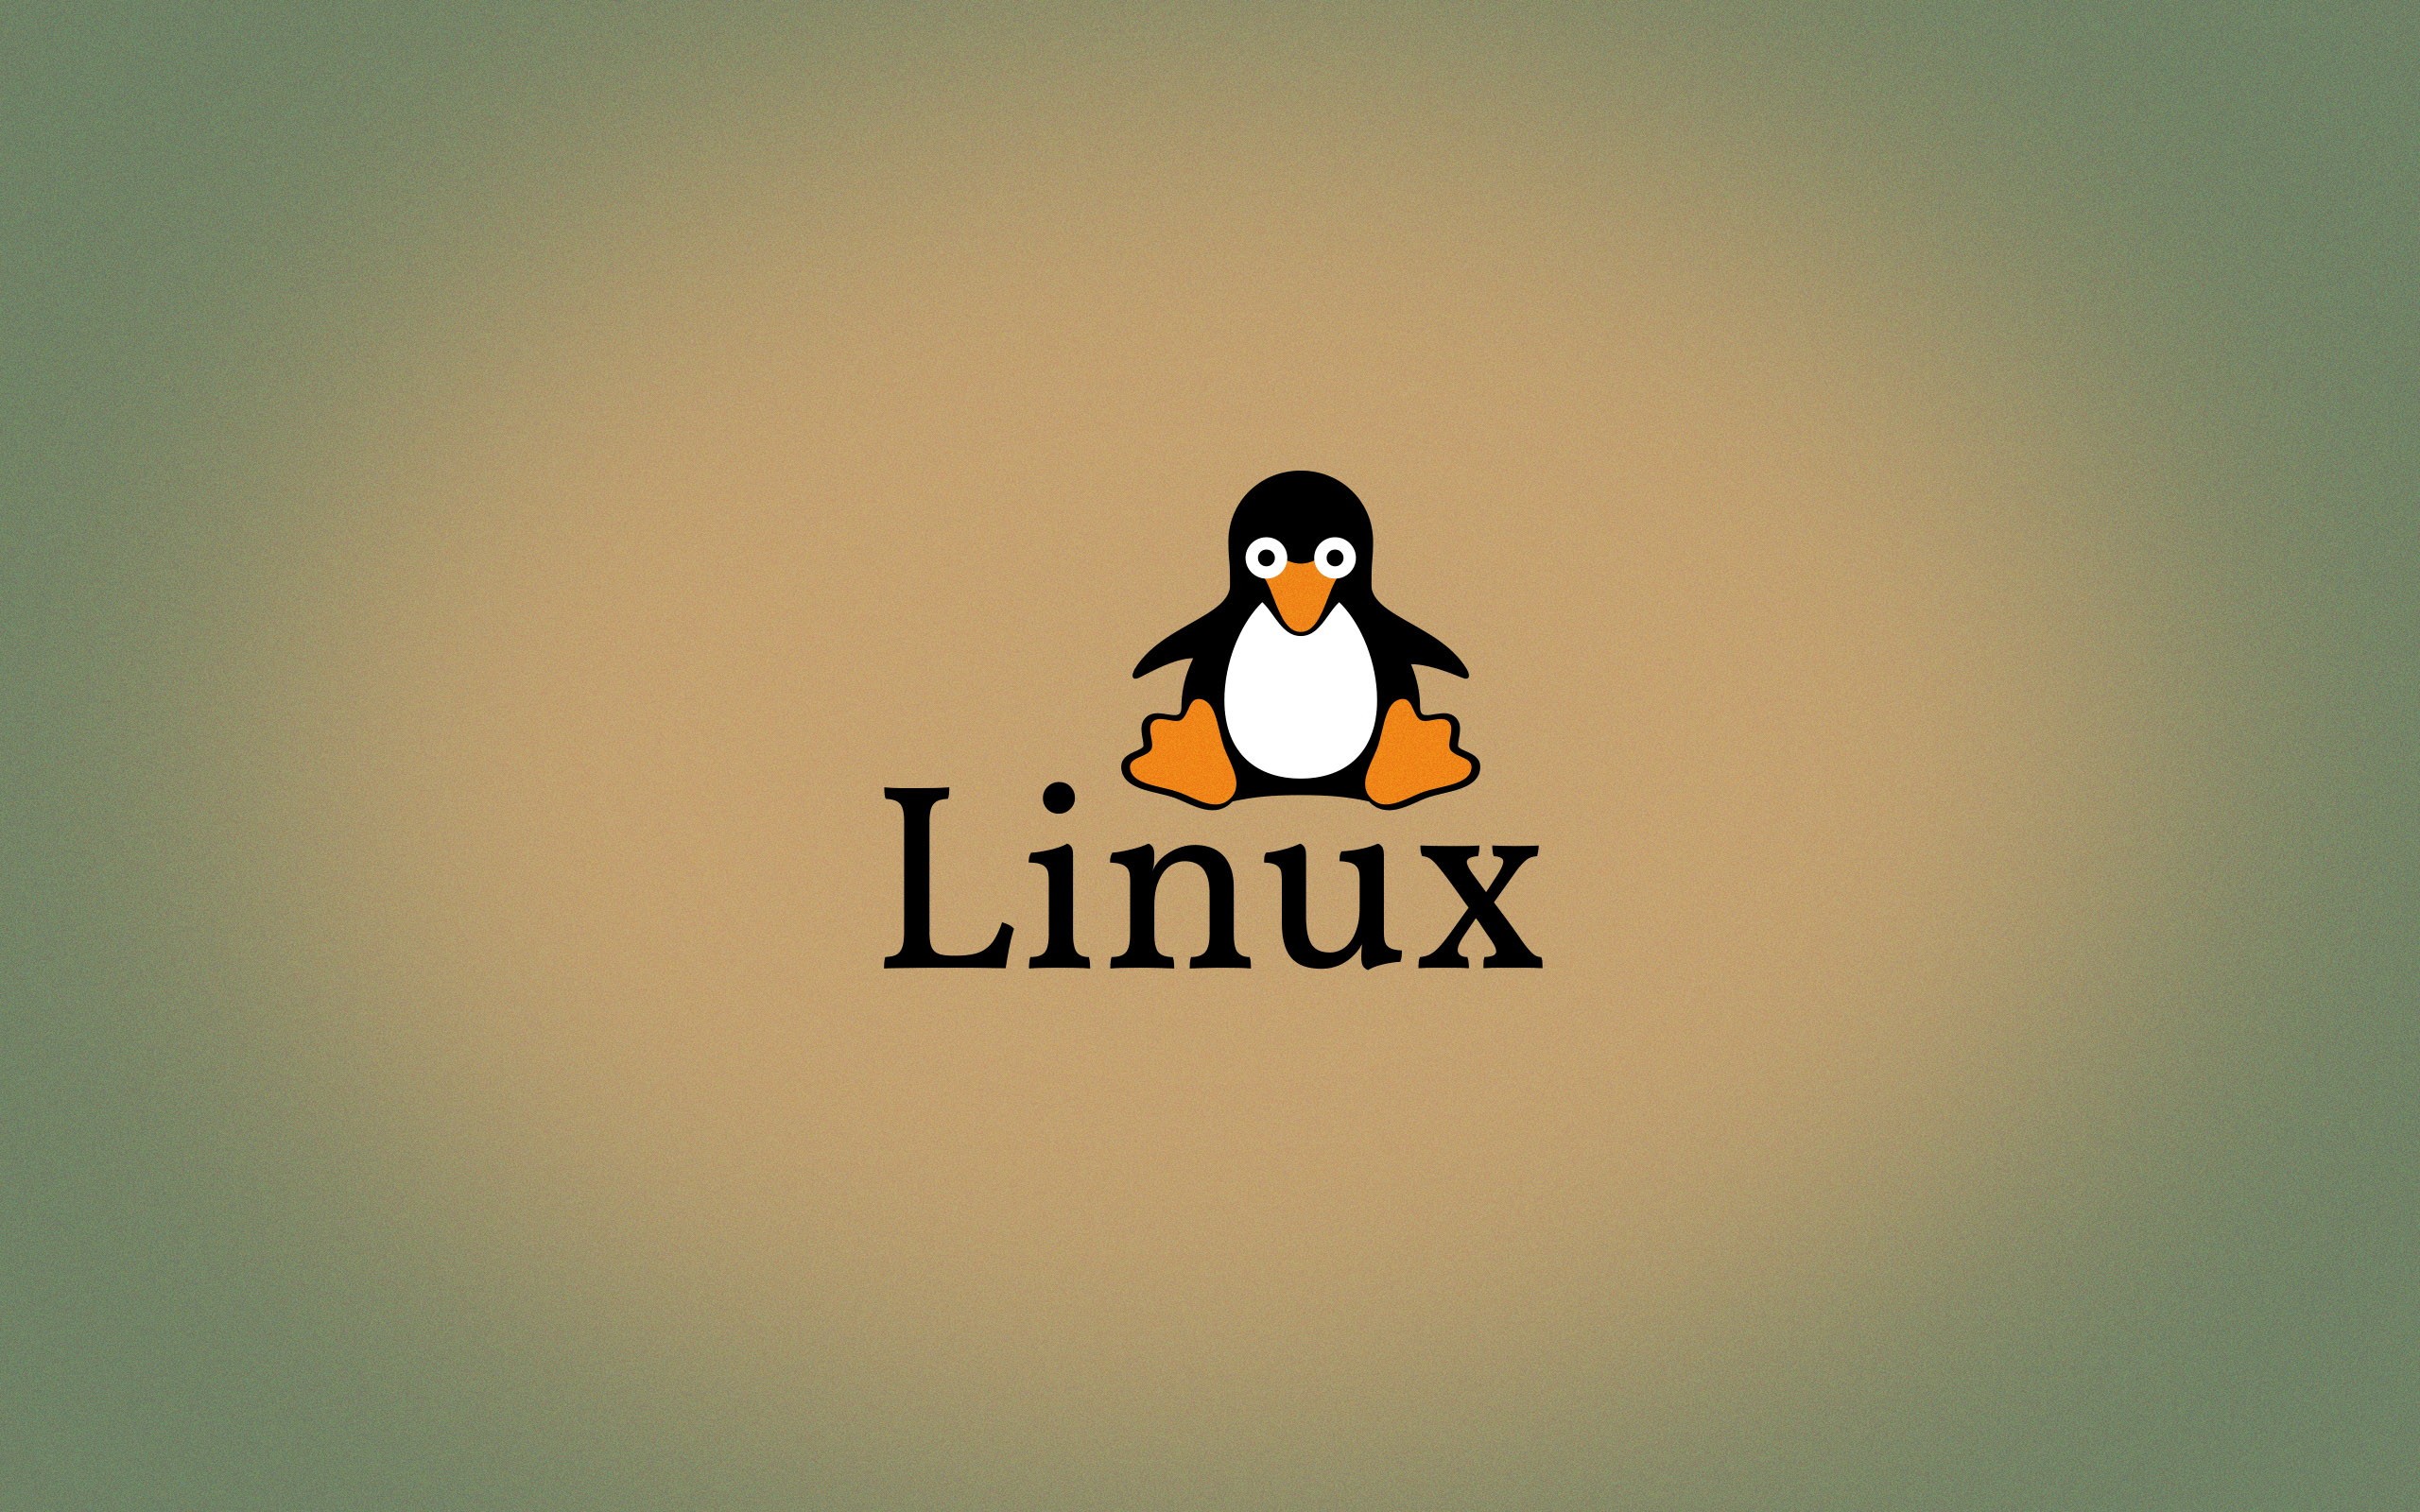 리눅스 턱시도 벽지,새,날 수없는 새,펭귄,제도법,폰트